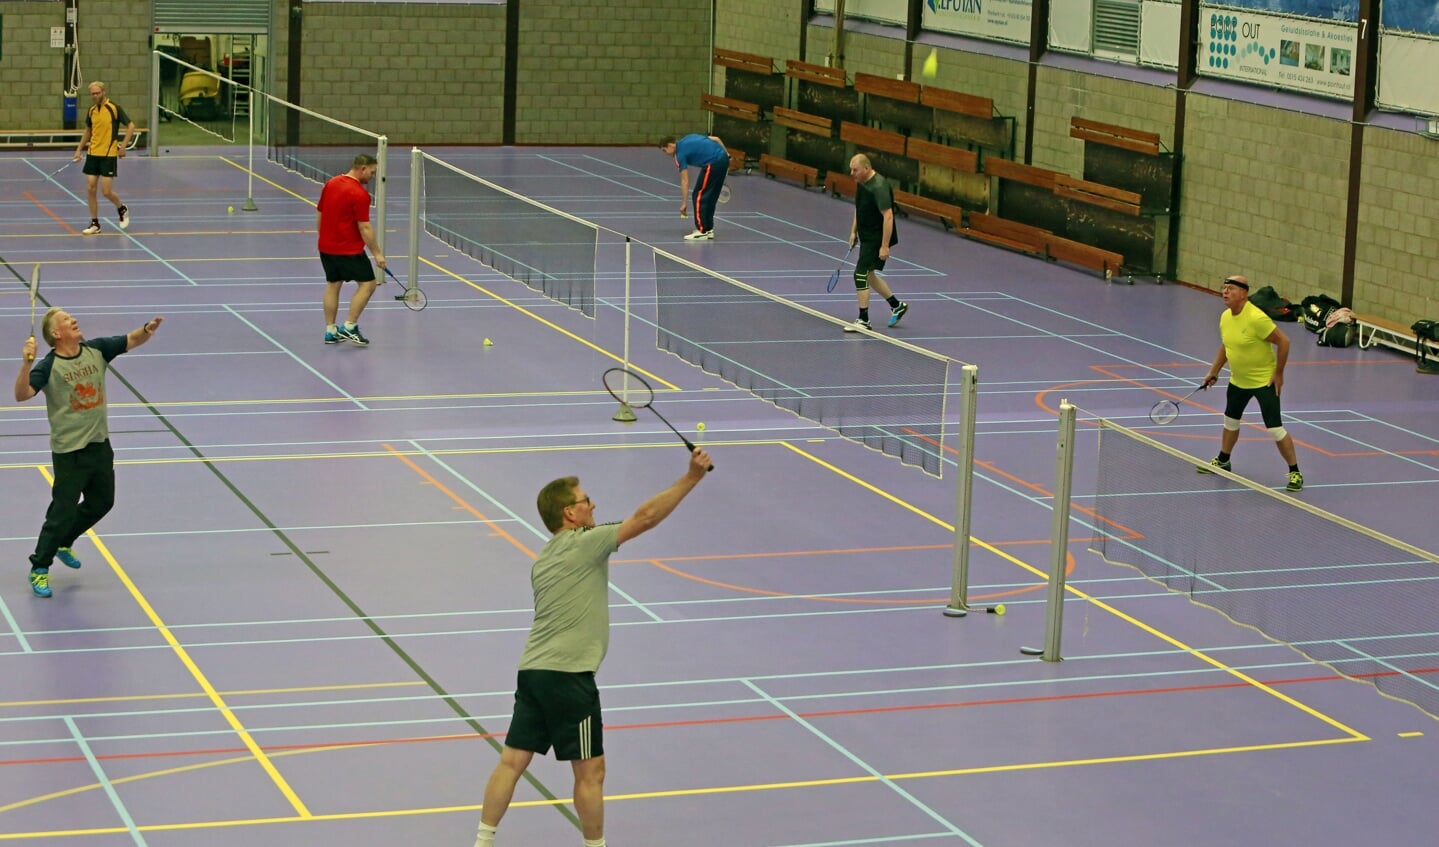 Iedere maandagavond gezellig badmintonnen in de Deimoshal.